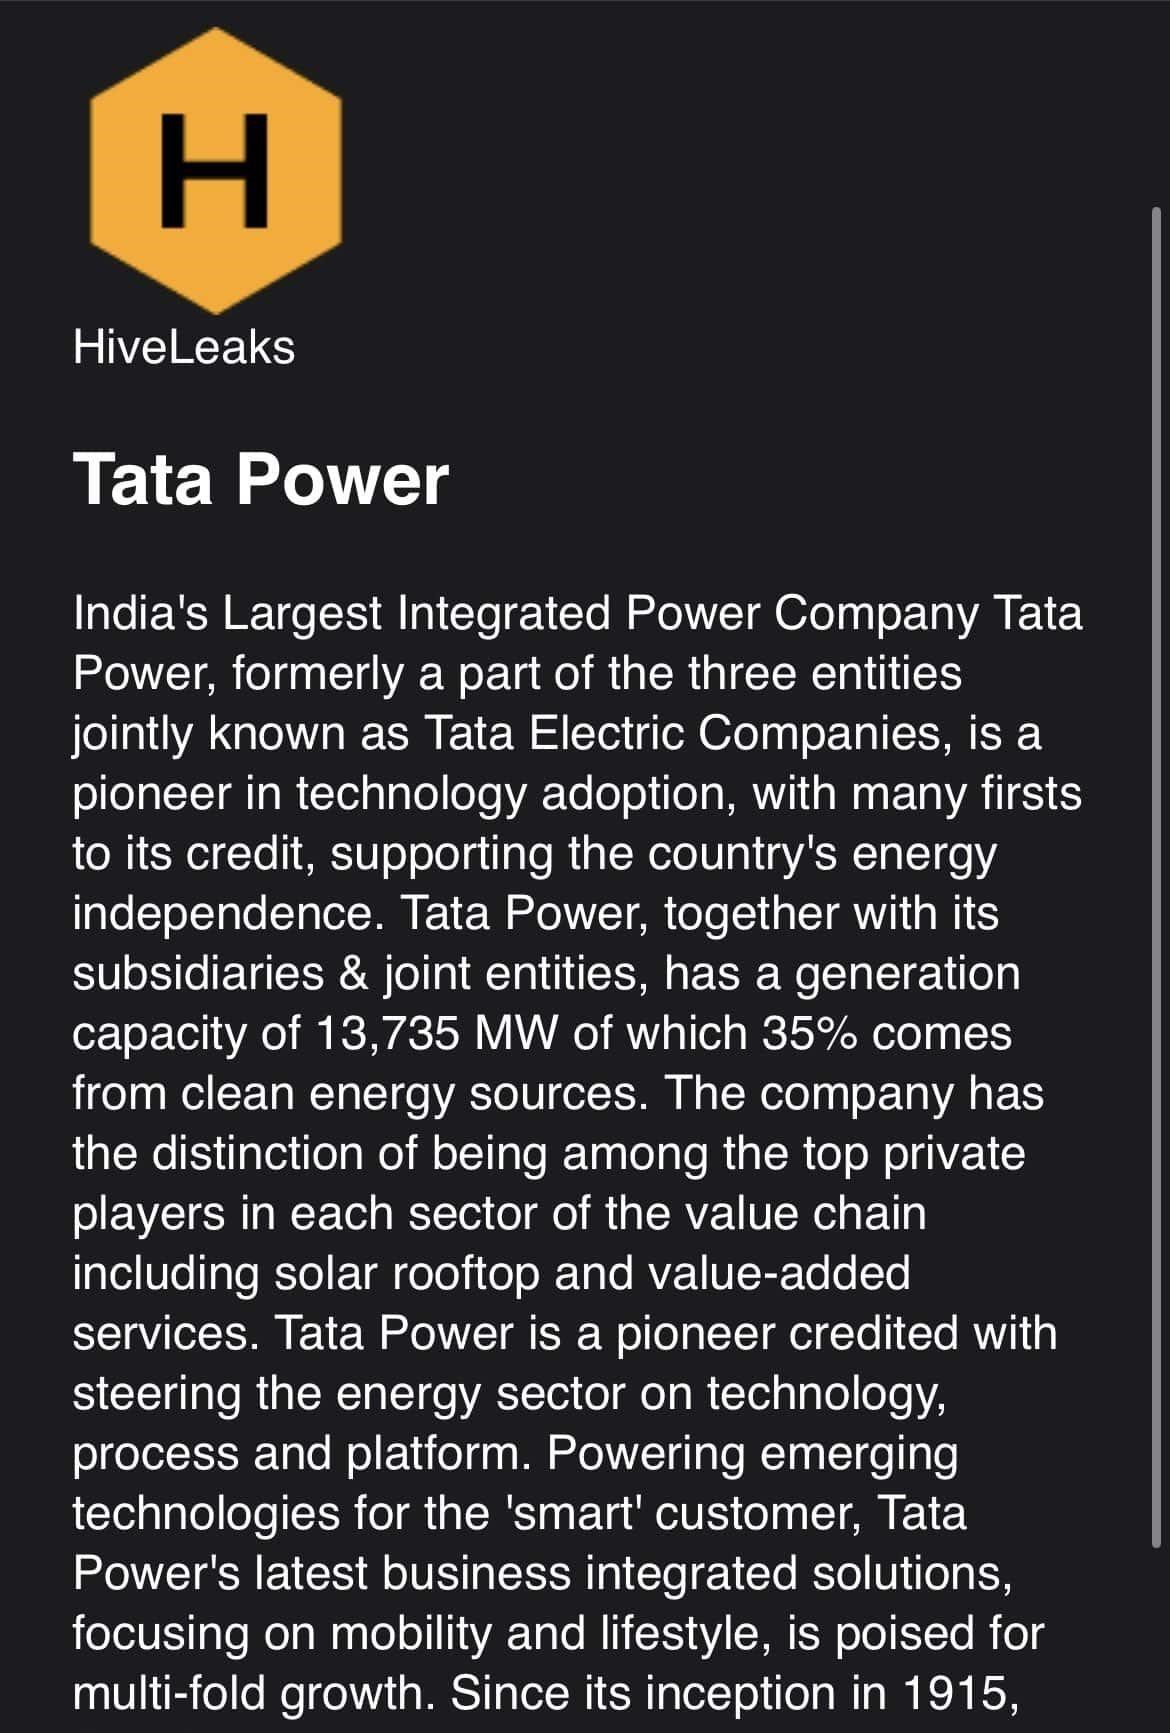 Hive and Tata Power